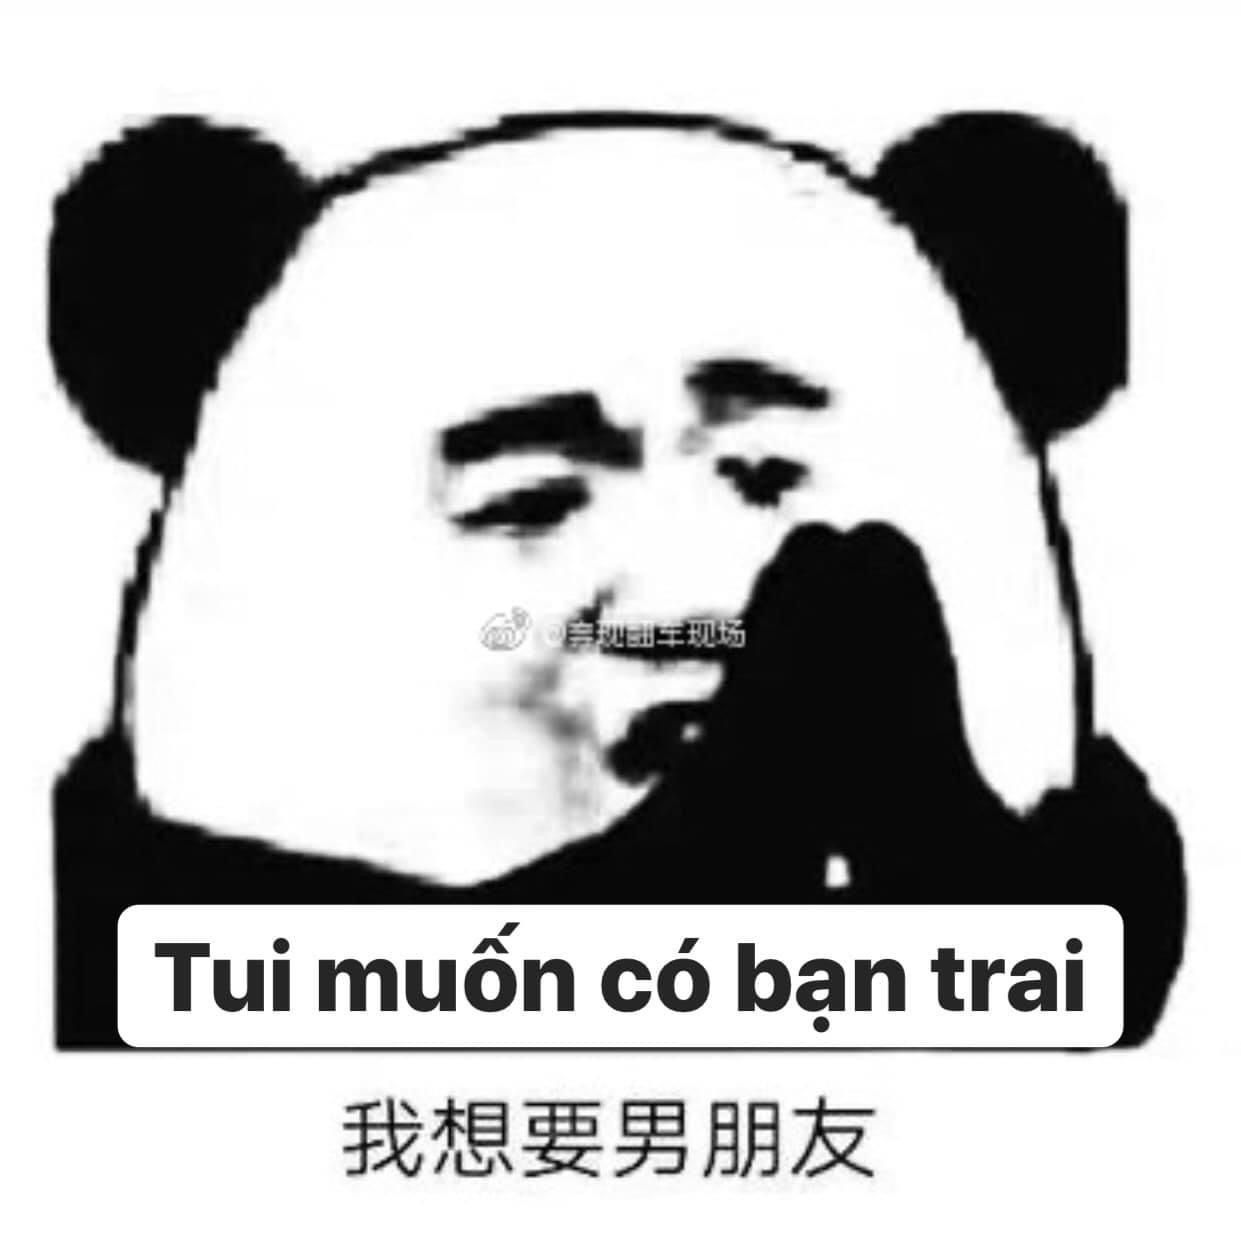 Ảnh Meme Gấu Trúc Weibo Trung Quốc Bựa Troll Hài Hước mới nhất 2023  TT  GDTX Quận 11